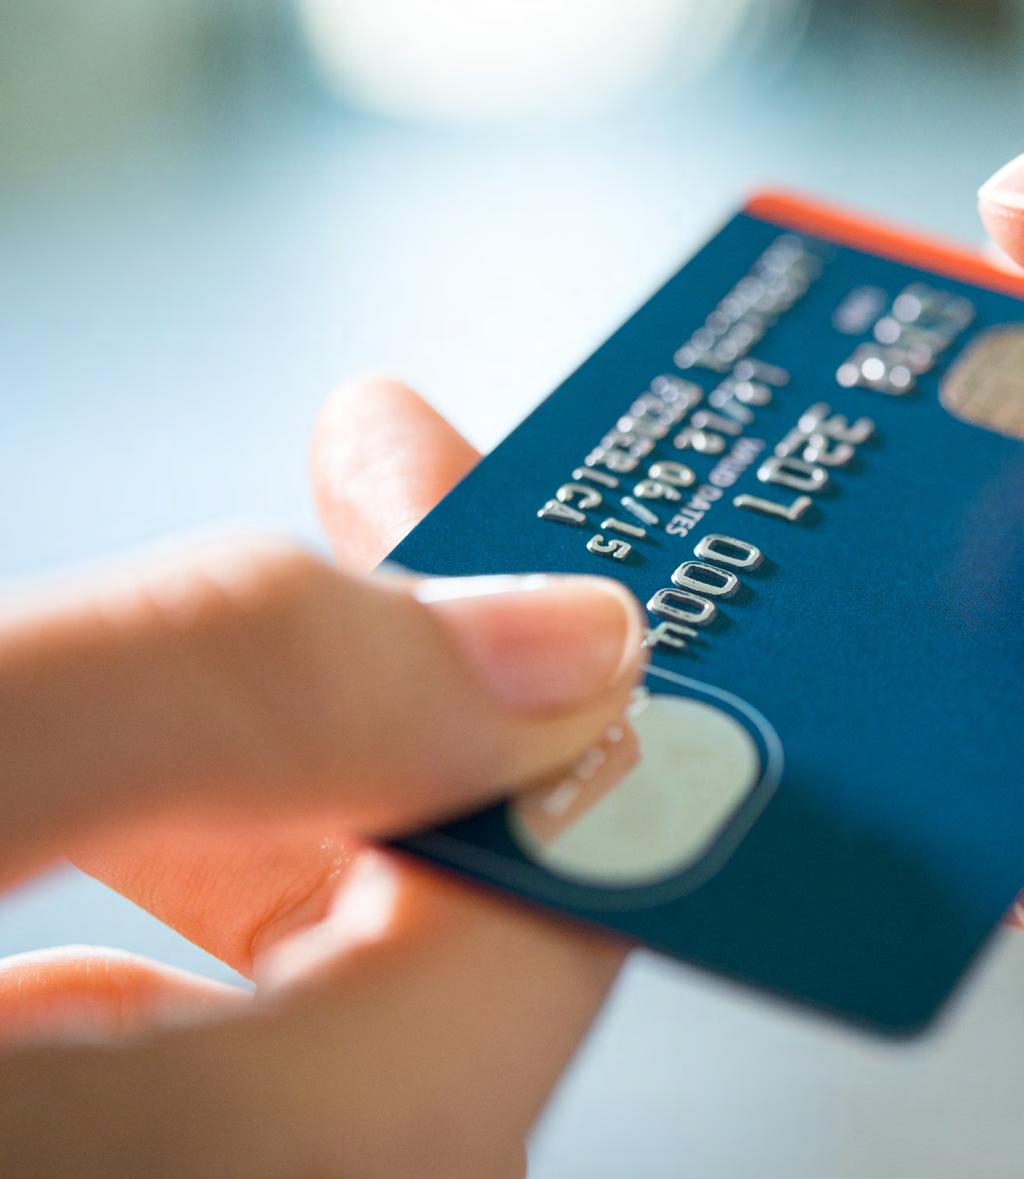 Antes de solicitar un crédito amparado, tenga en cuenta El titular que solicite una tarjeta de crédito amparada debe ser consciente que adquiere una responsabilidad financiera adicional por lo que se